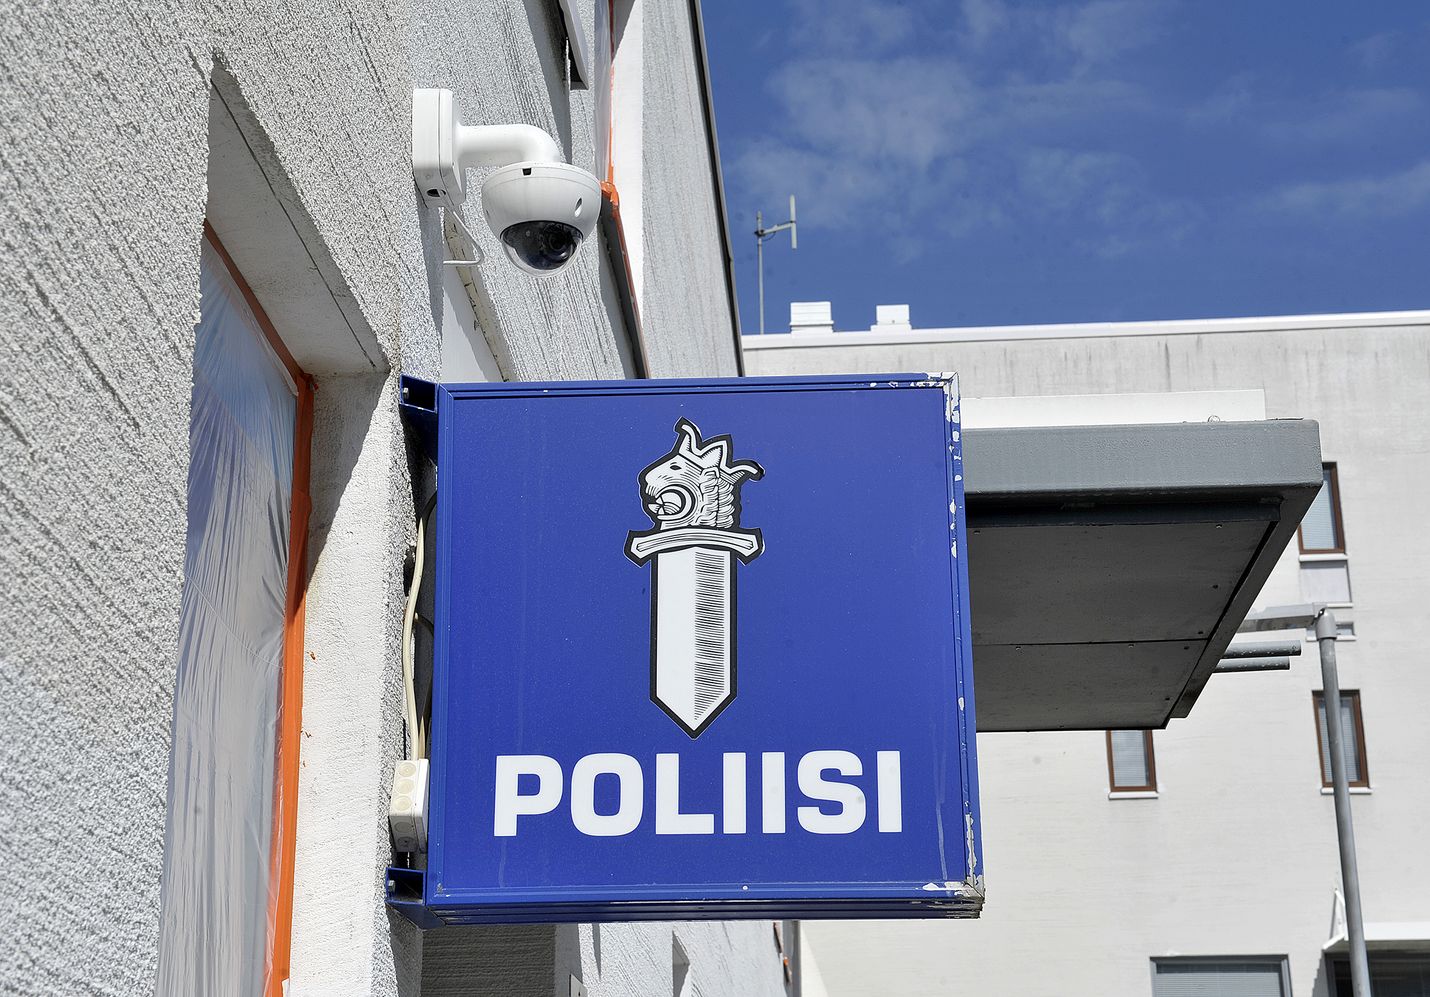 Rauman poliisiaseman rikostutkinnassa on panostettu laatuun, vaikka jutturuuhka oli vielä viime vuonnakin poikkeuksellisen kova, sanoo tutkinnanjohtaja, rikoskomisario Kimmo Hiltula.